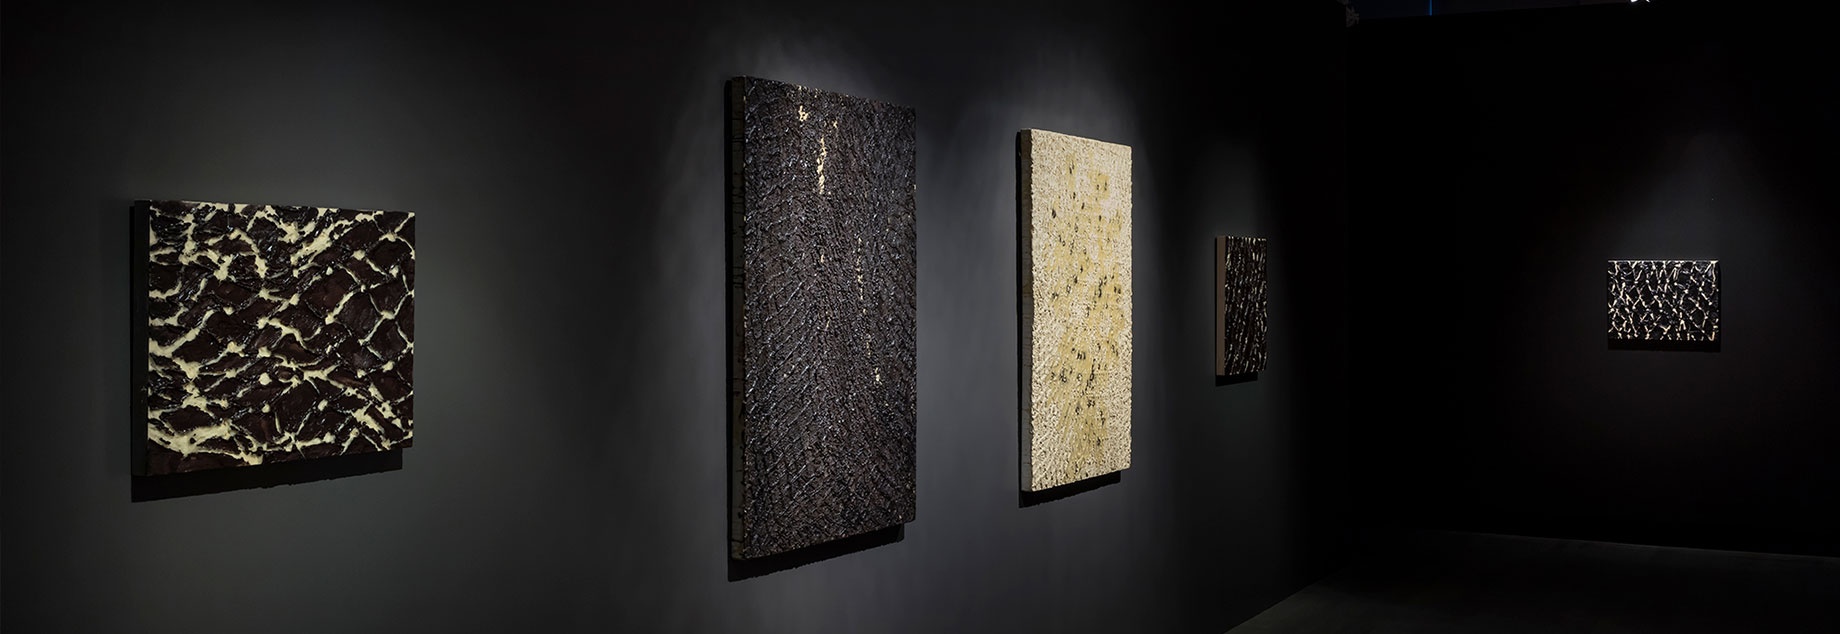 Nicole Collins, Furthest Boundless (Koffler Gallery installation detail), 2018. 